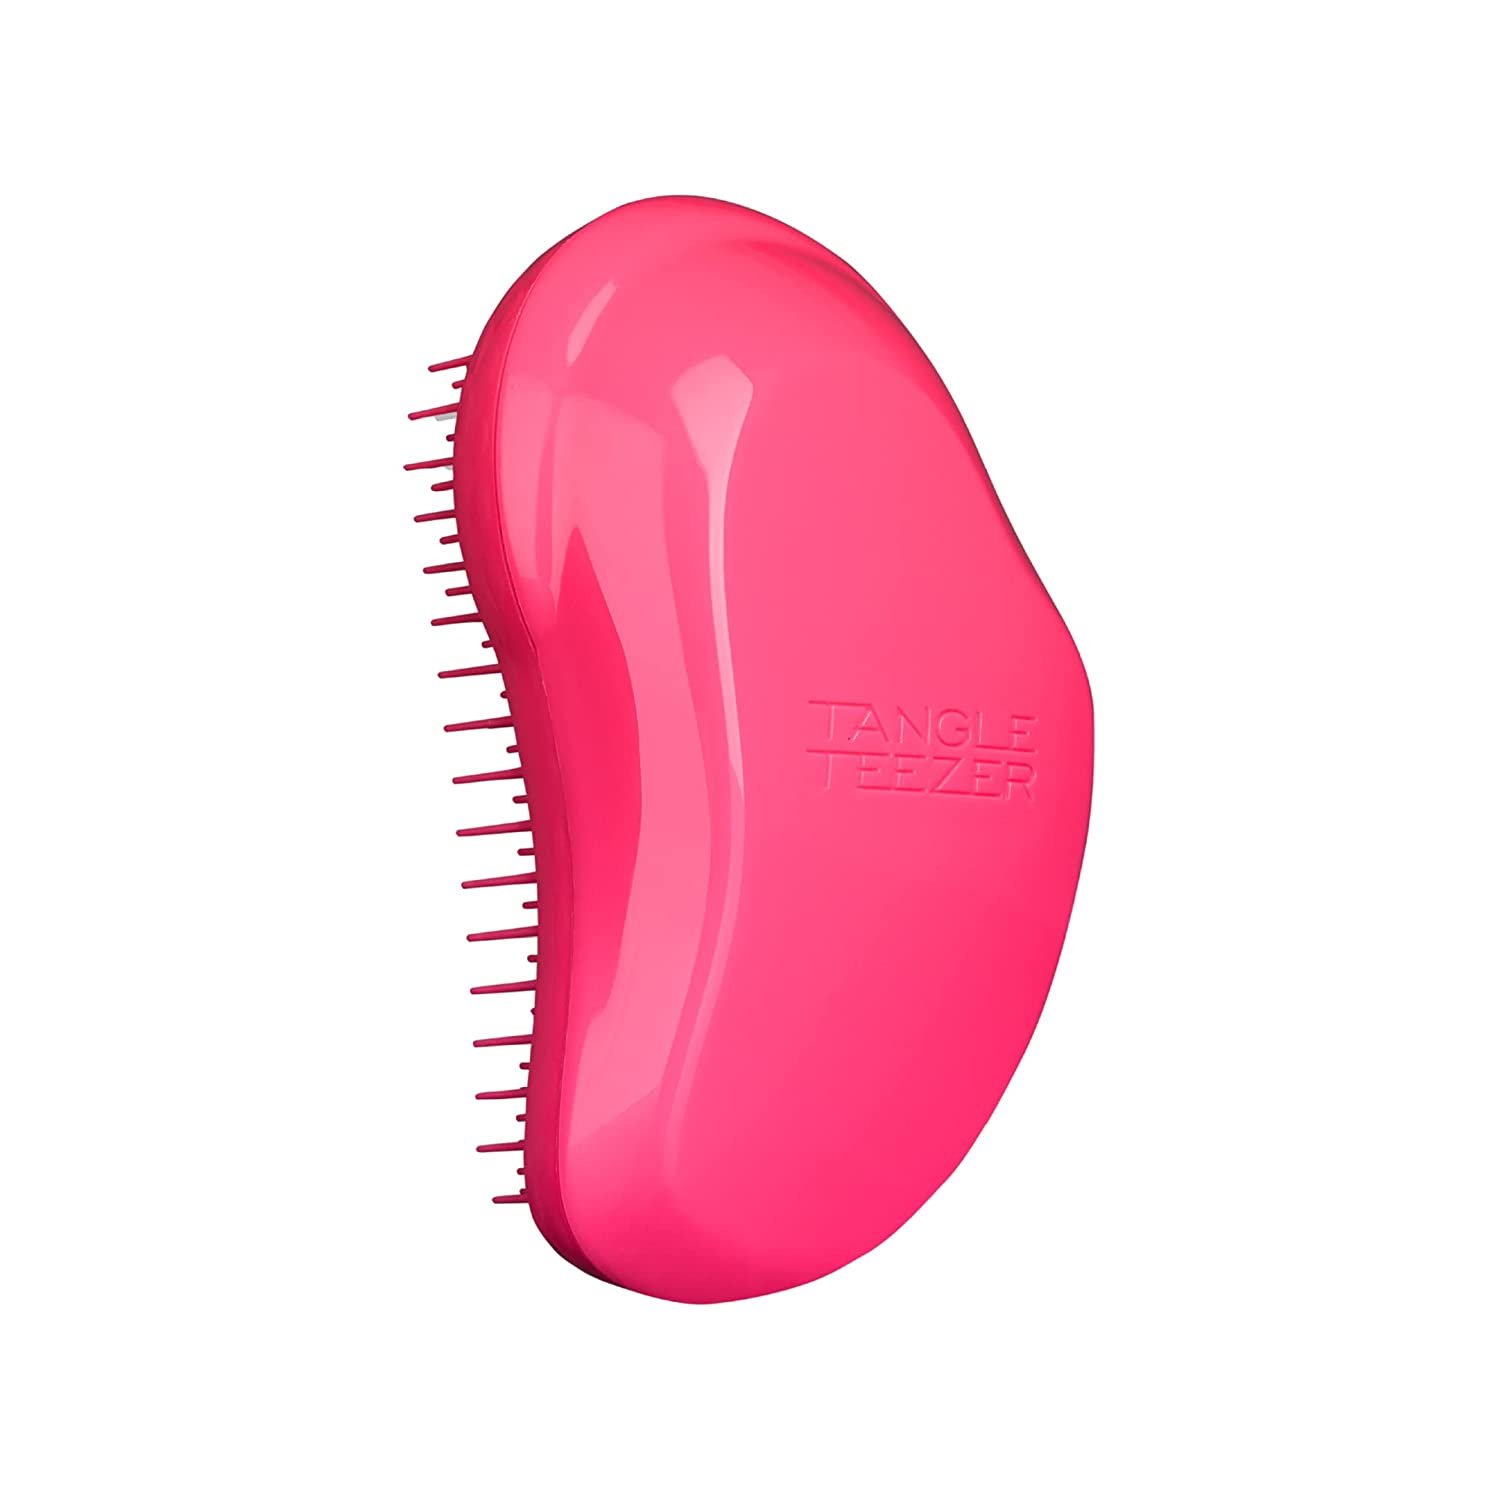 Tangle teezer the original detangling hairbrush pink.jpg